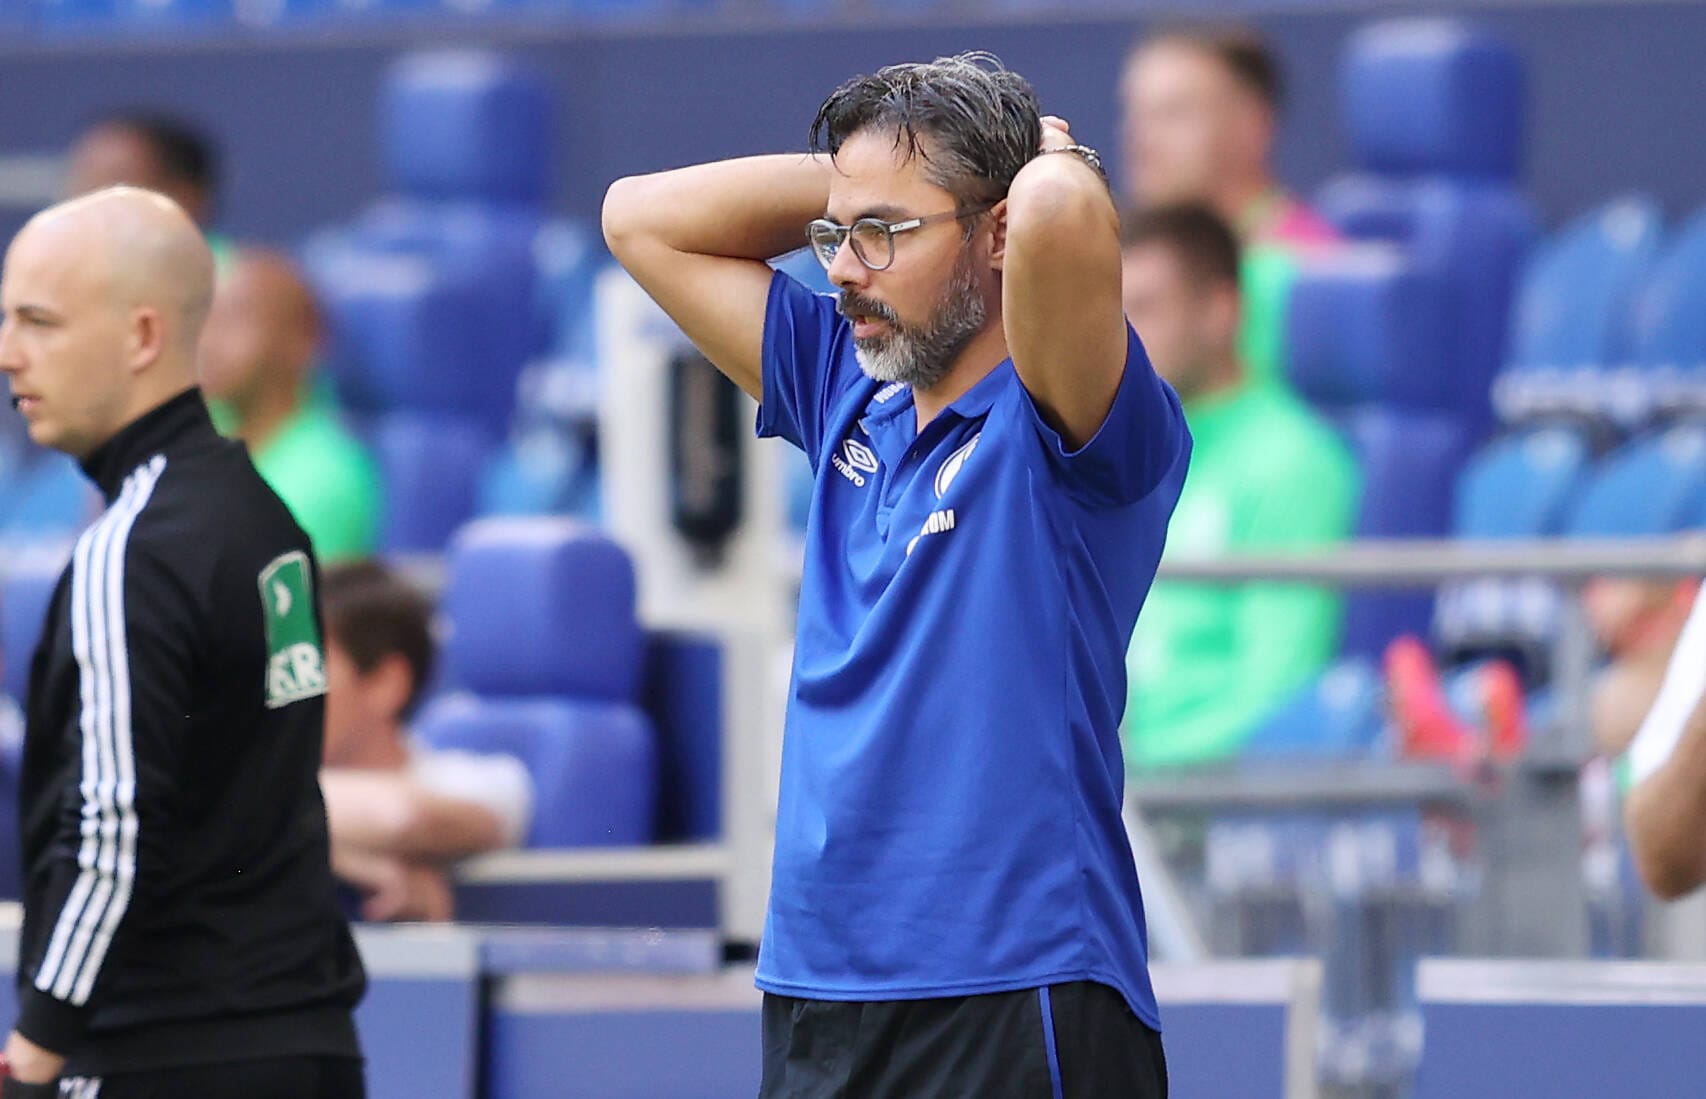 Klassenerhalt trotz Negativspirale: Schalke 04 ist in der Rückrunde 16 Spiele sieglos geblieben. Lediglich in der ersten Partie des Jahres gegen Gladbach gab es einen Dreier. Mit einer derart schwarzen Serie in der Liga zu bleiben, ist bisher keinem anderen Team gelungen.